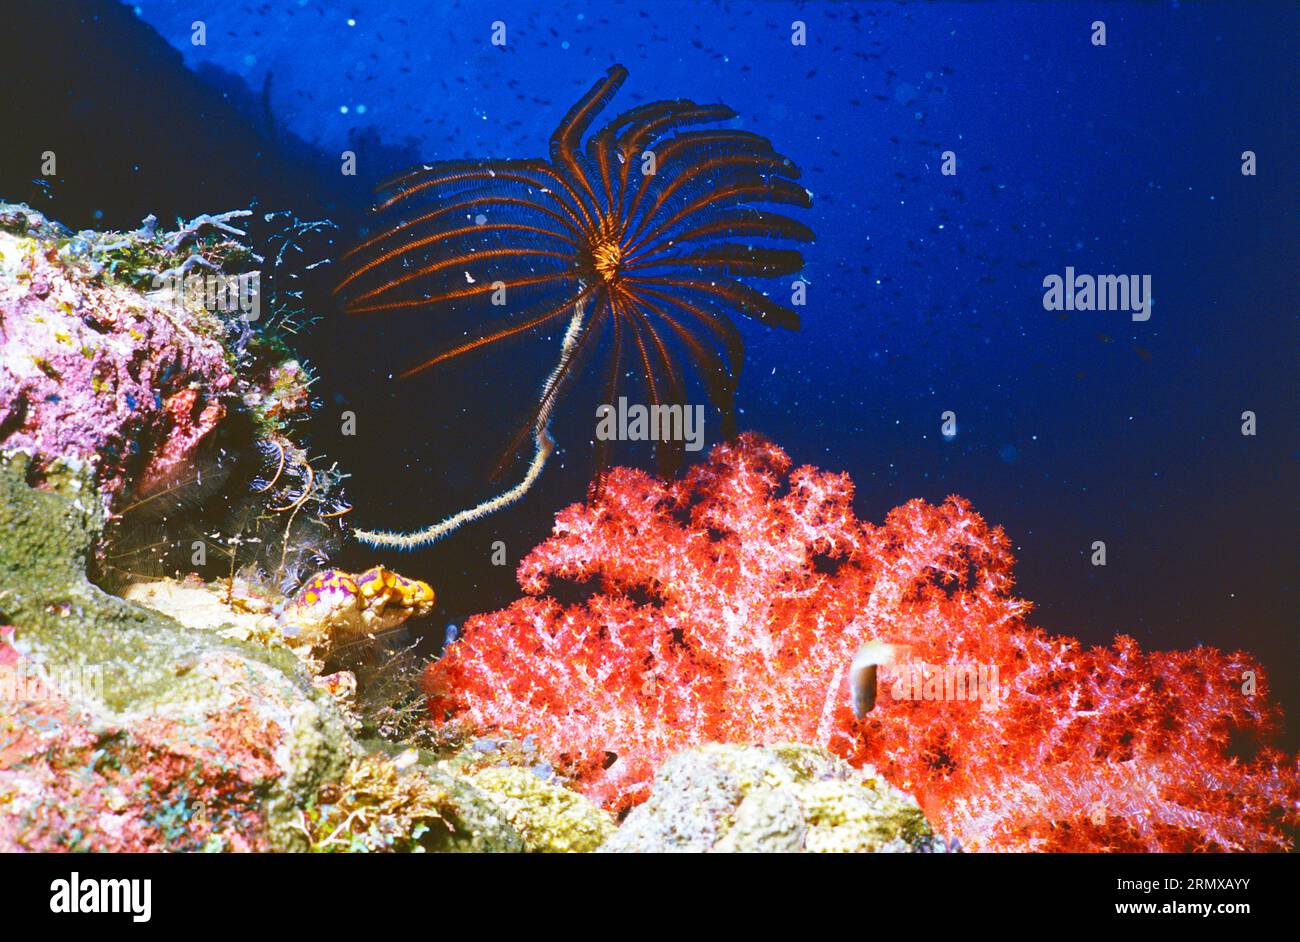 Crinoïde et corail gorgonien rouge (Alcyonacea). Gros plan sous l'eau. Papouasie-Nouvelle-Guinée. Banque D'Images